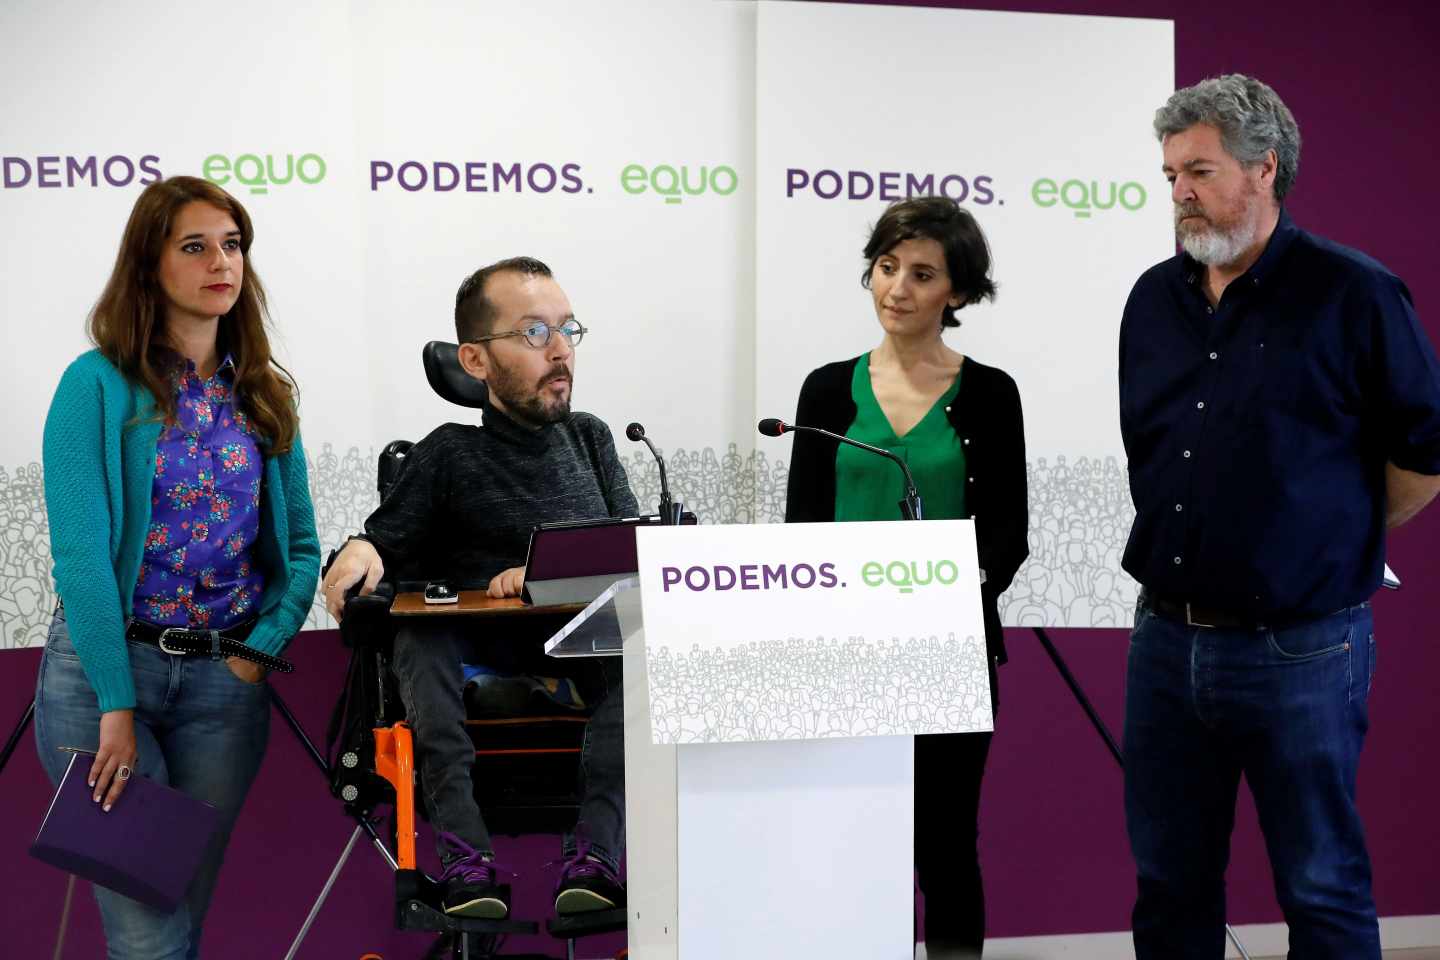 Vera, Echenique, Del Hoyo y López Uralde -ambos de Equo-, en la sede de Podemos.